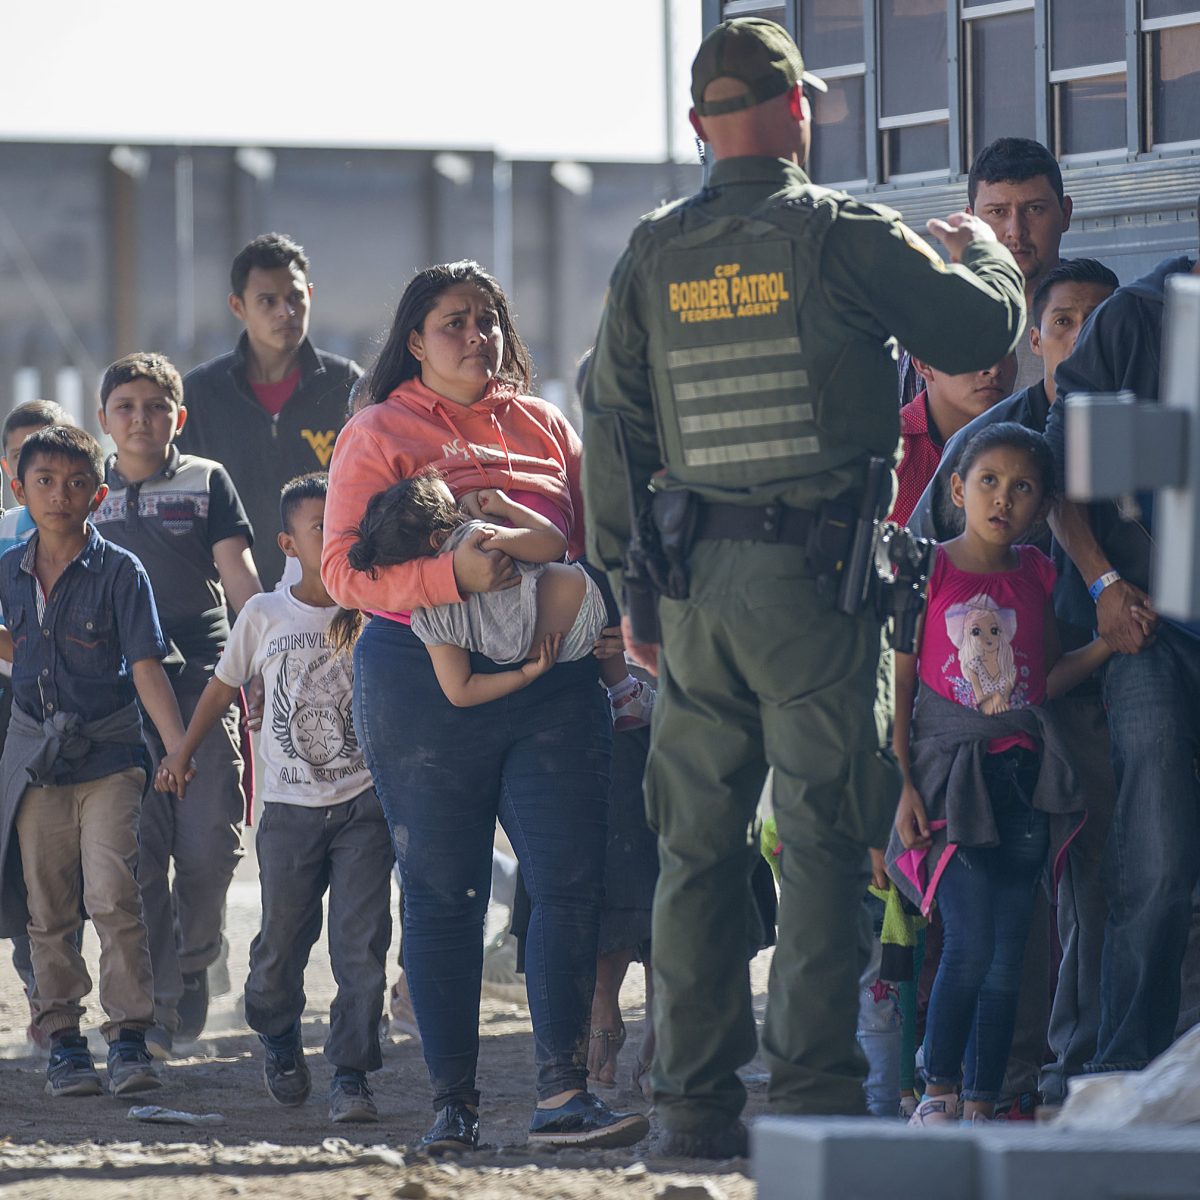 Republicanos presentan proyecto de ley migratorio que restringe el asilo